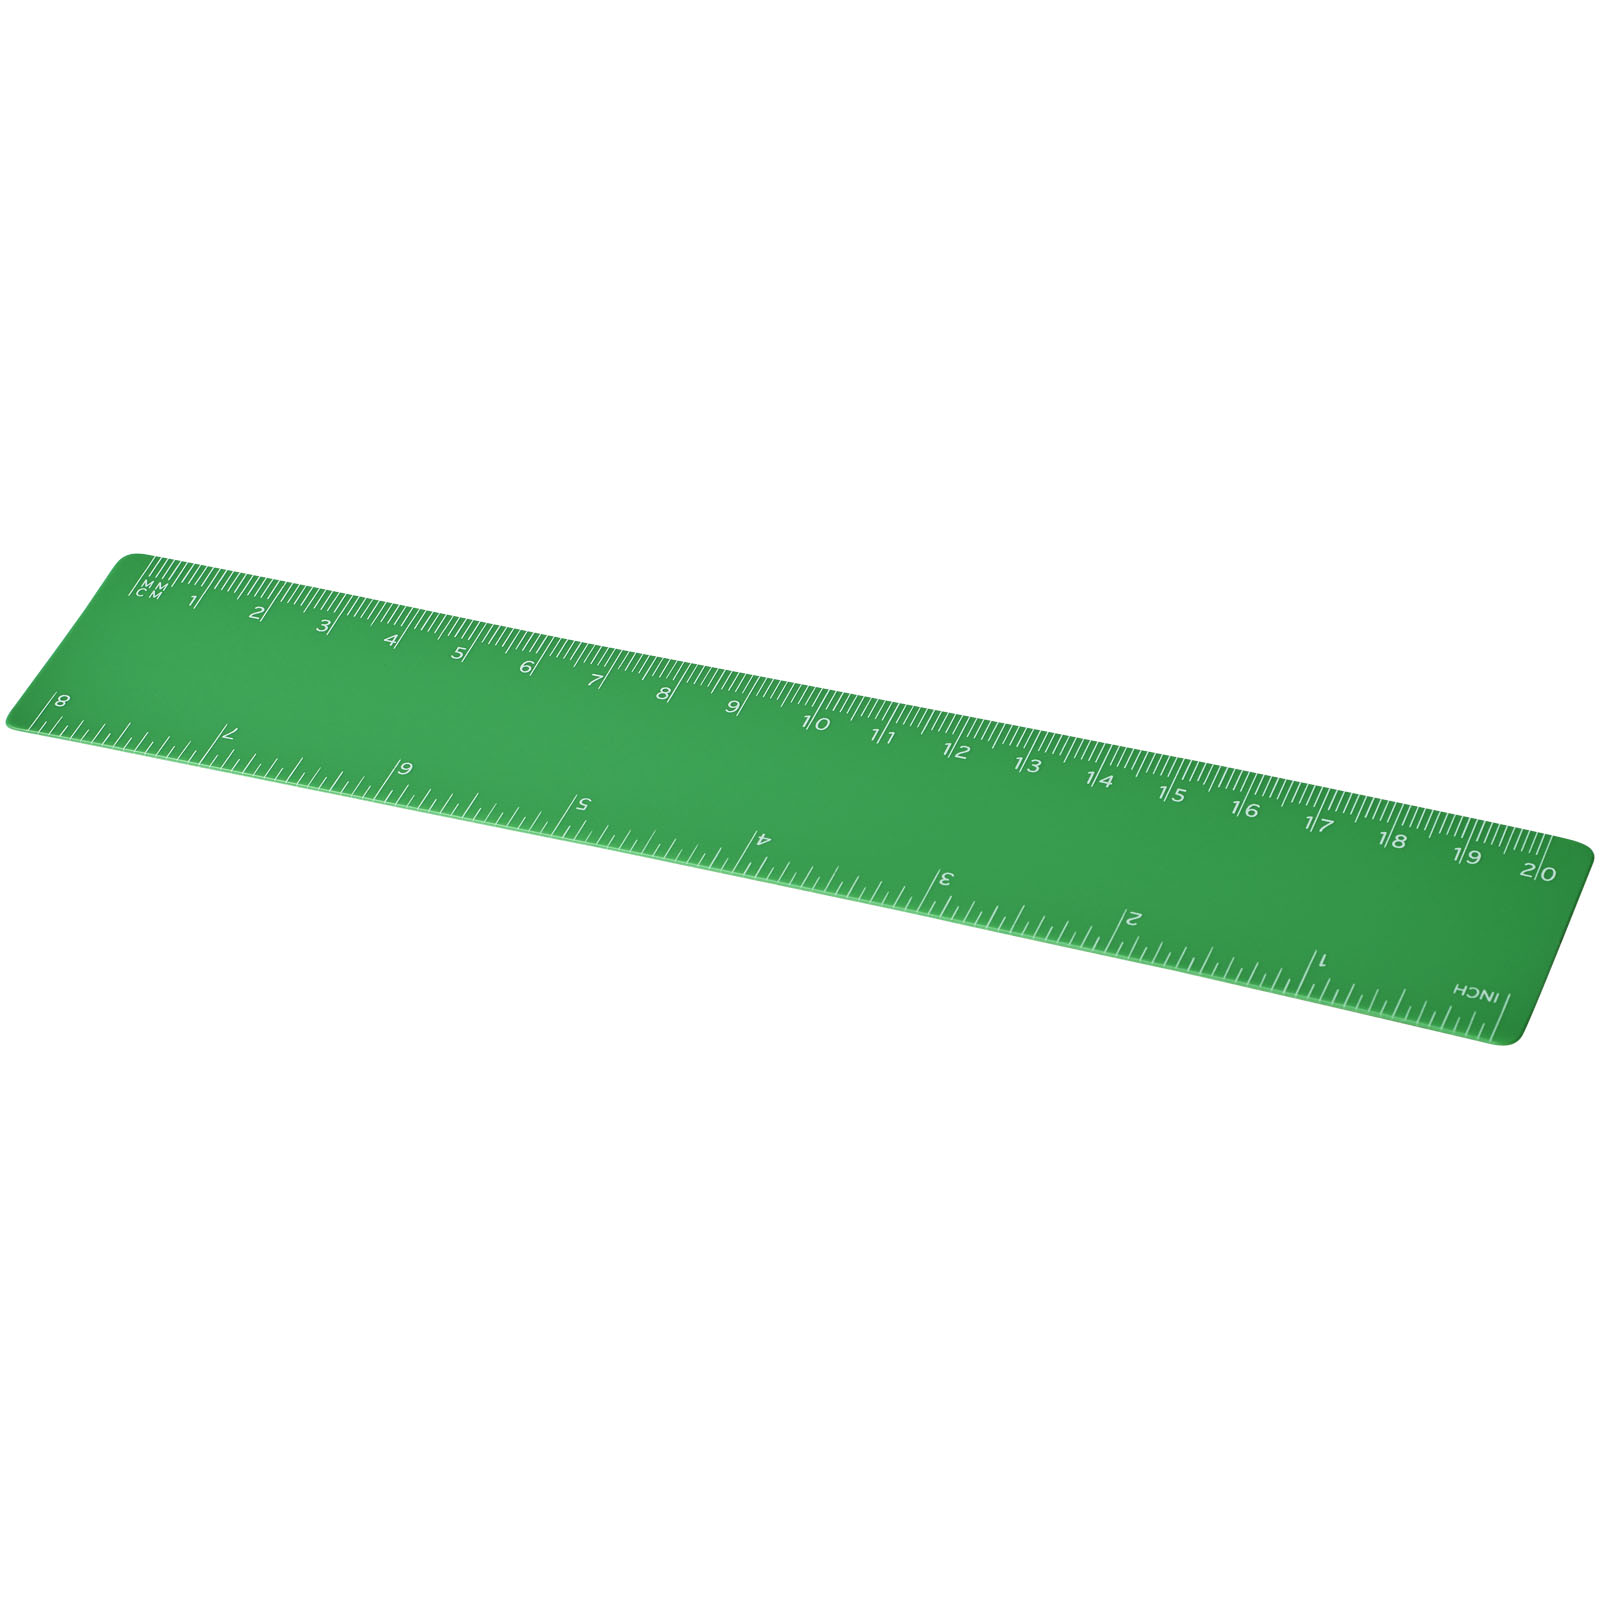 Advertising Desk Accessories - Rothko 20 cm plastic ruler